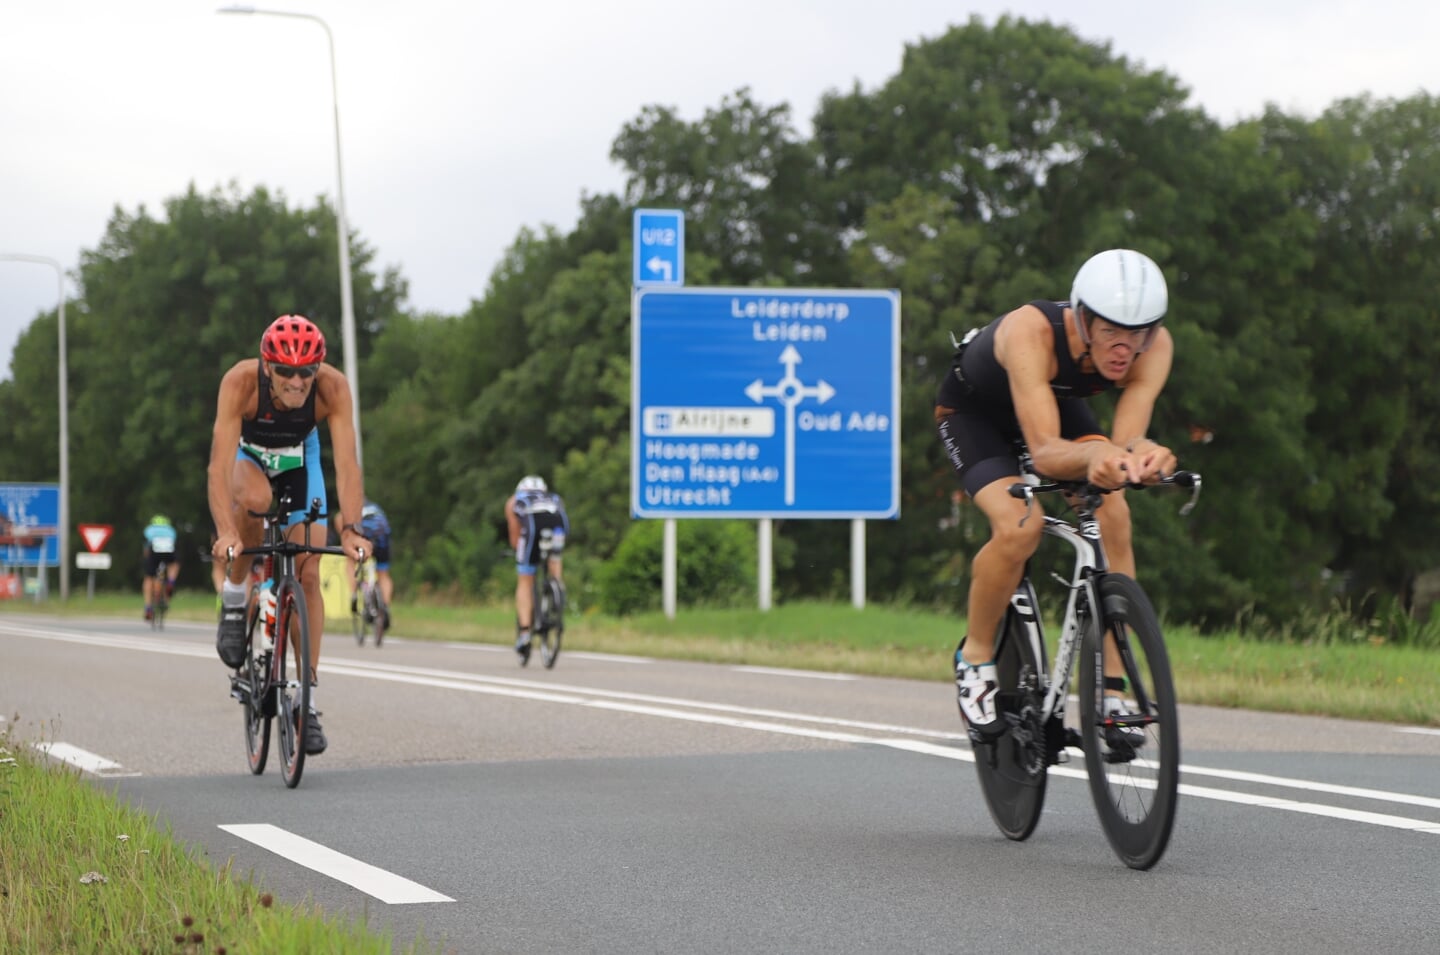 Het fietsparcours was uitgezet over het gladde asfalt van de N445 tussen Leiderdorp en Roelofarendsveen. 